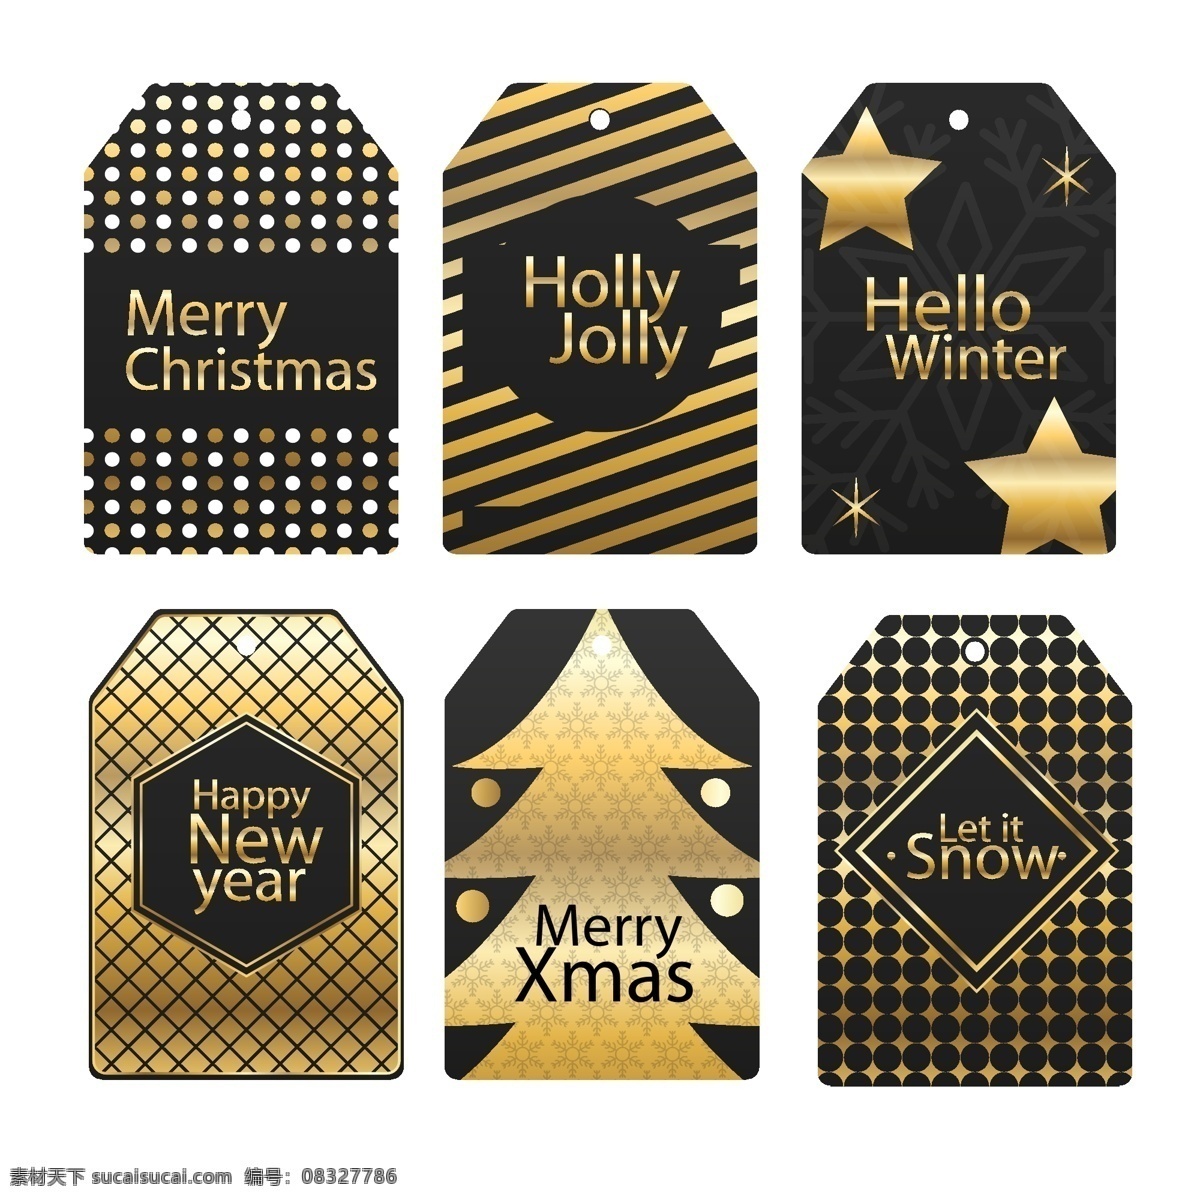 时尚 创意 圣诞节 标签 矢量素材 金色 圣诞树 星星